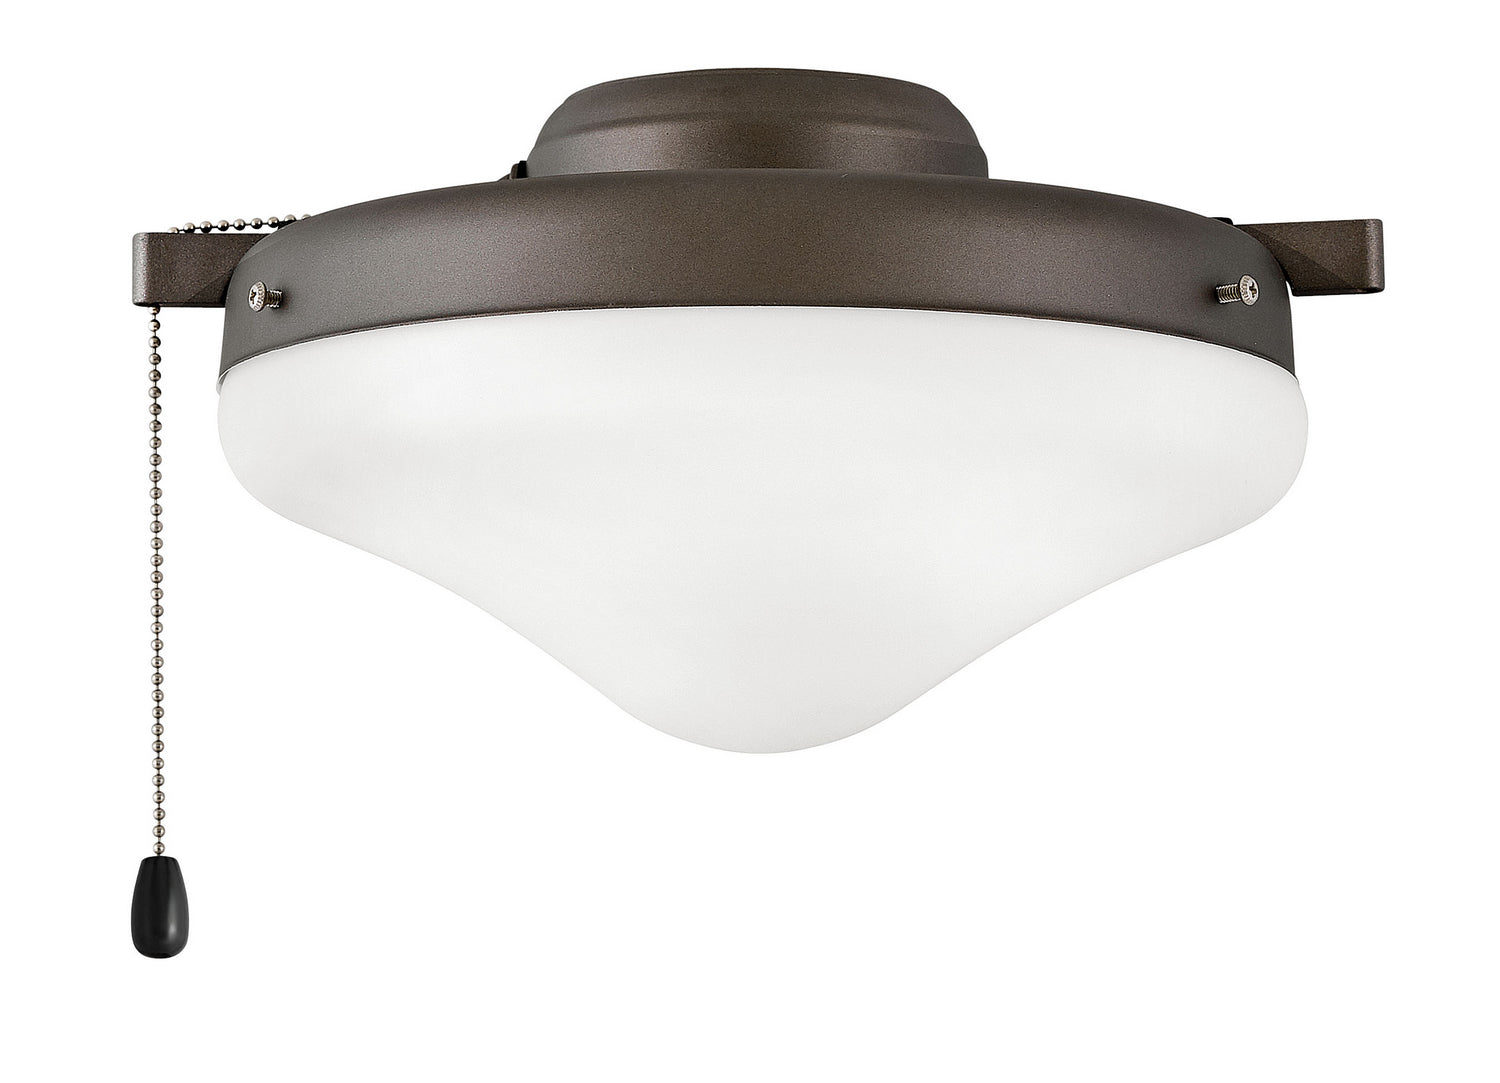 Hinkley Canada - LED Fan Light Kit - Light Kit - Metallic Matte Bronze- Union Lighting Luminaires Decor